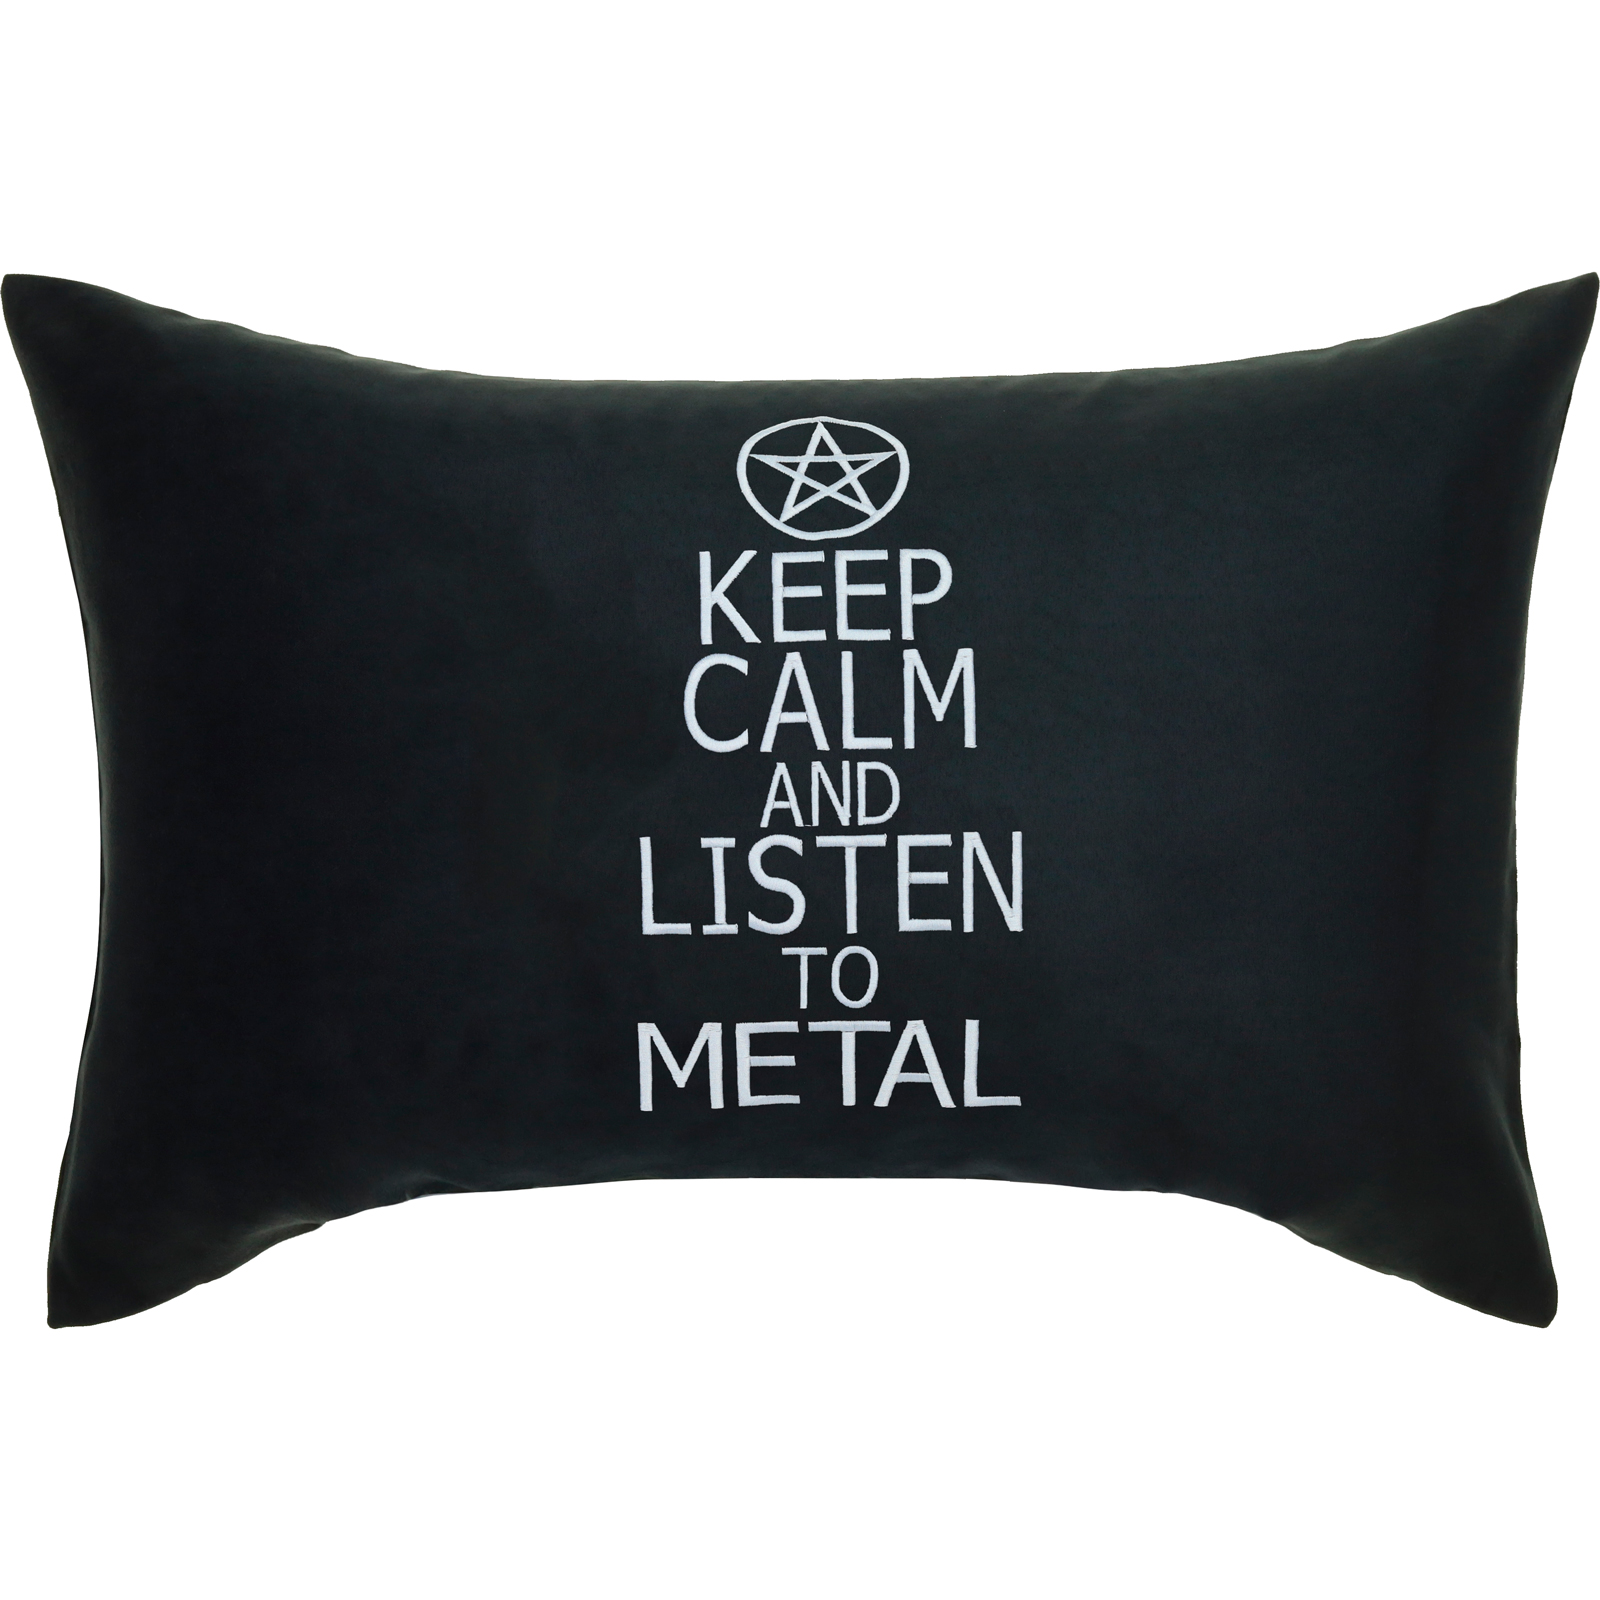 Listen to Metal